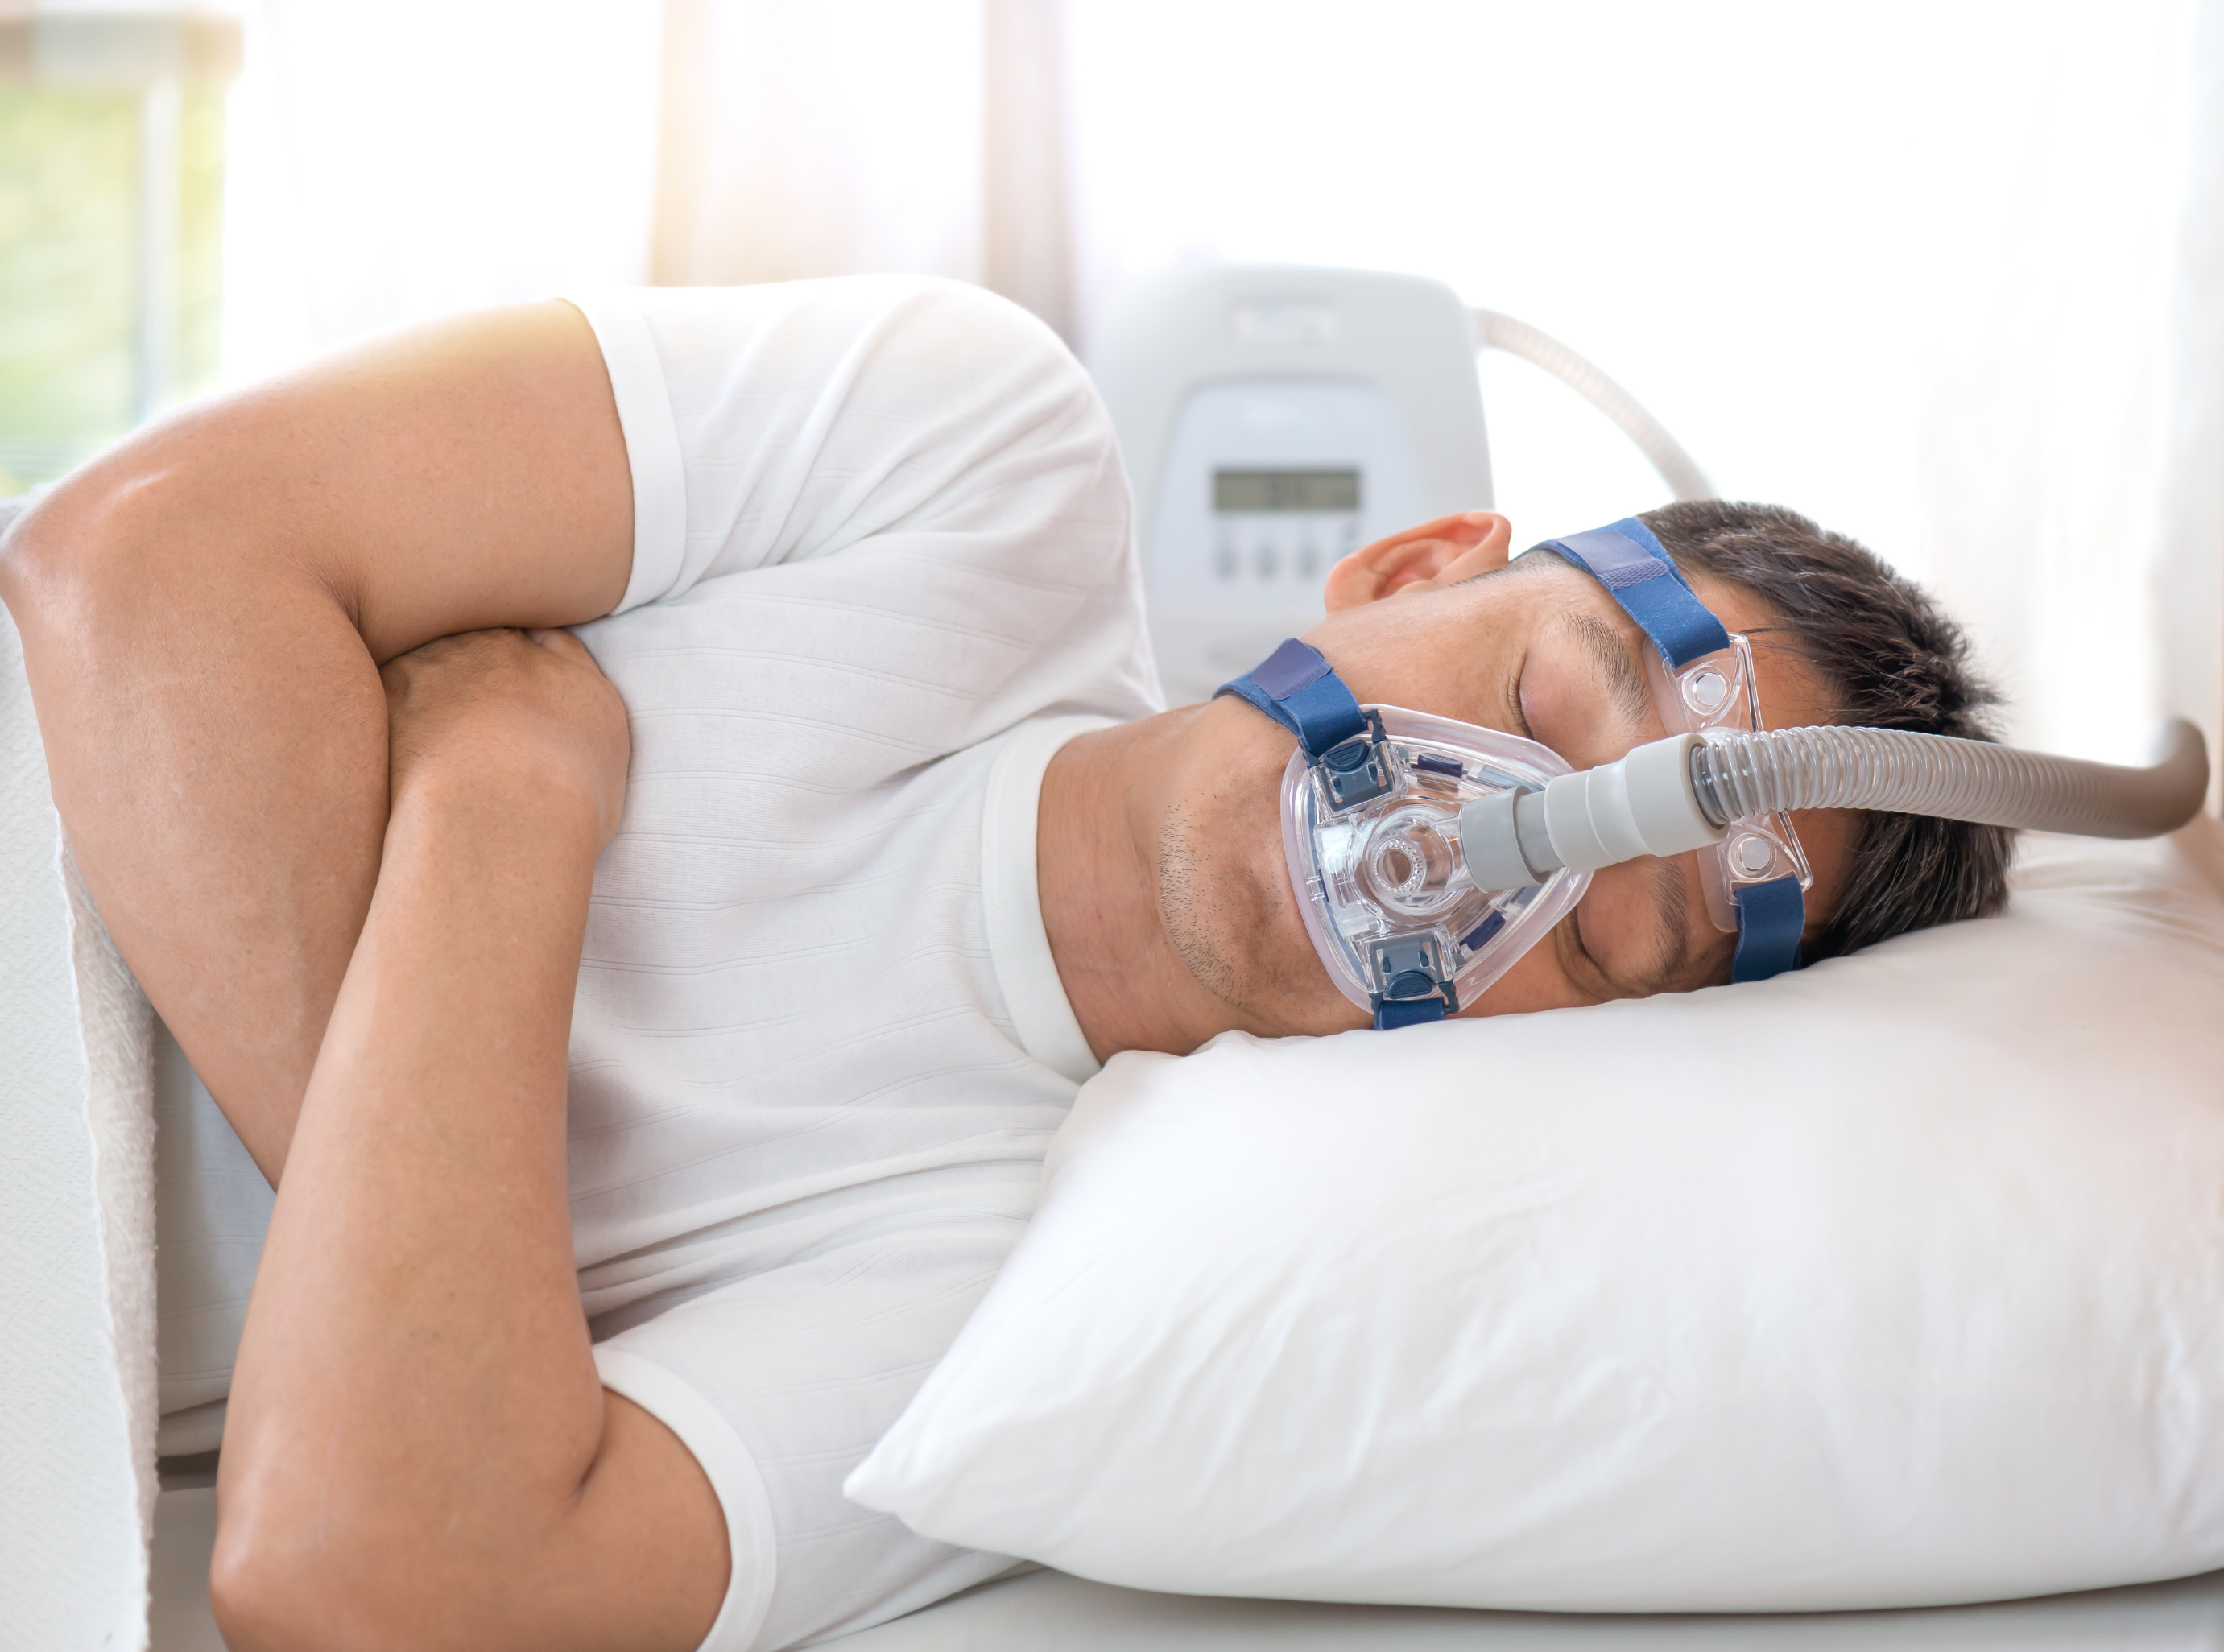 Terapia con CPAP para apnea del sueño, ¿aumenta niveles de actividad  durante el día?